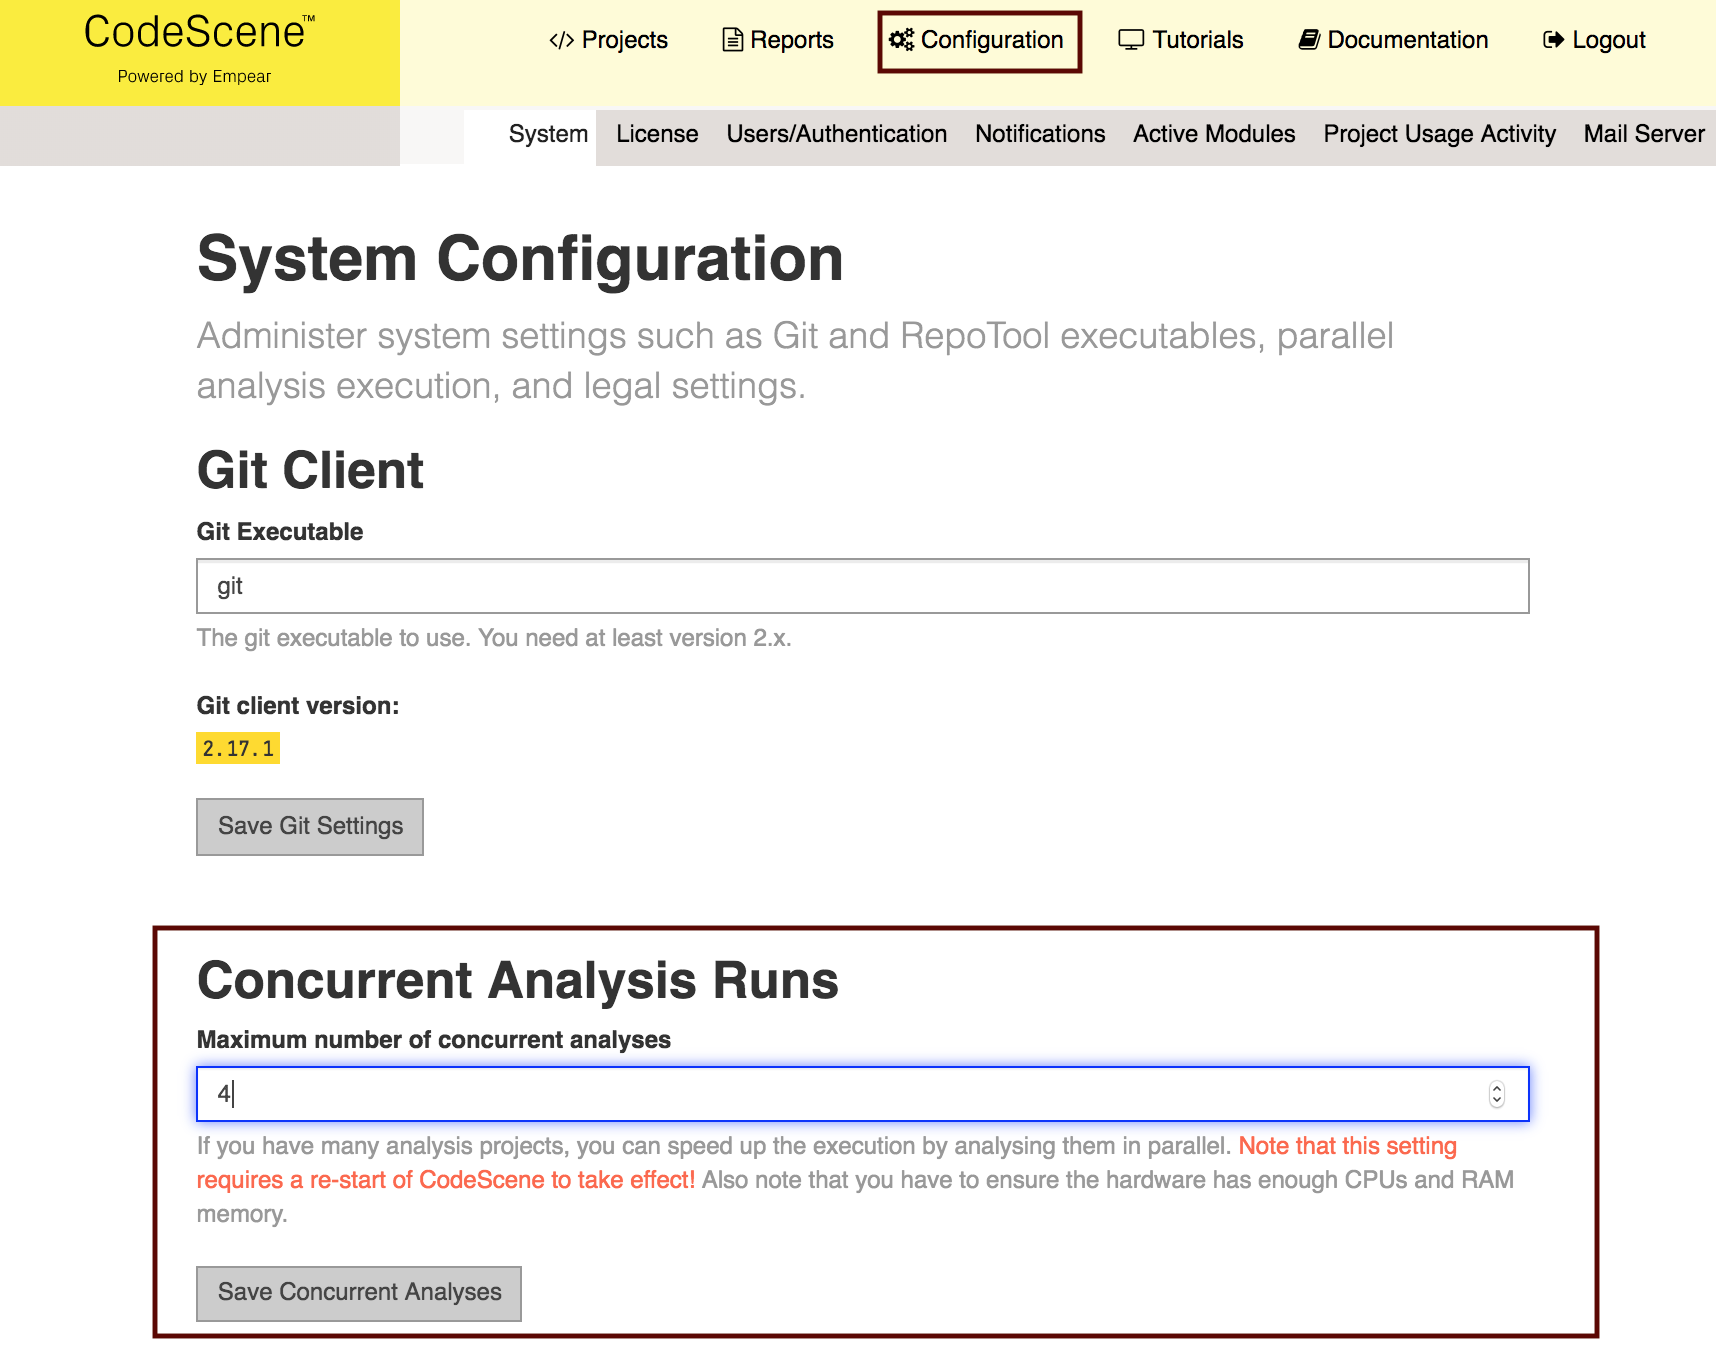 Configure the maximum number of concurrent analyses